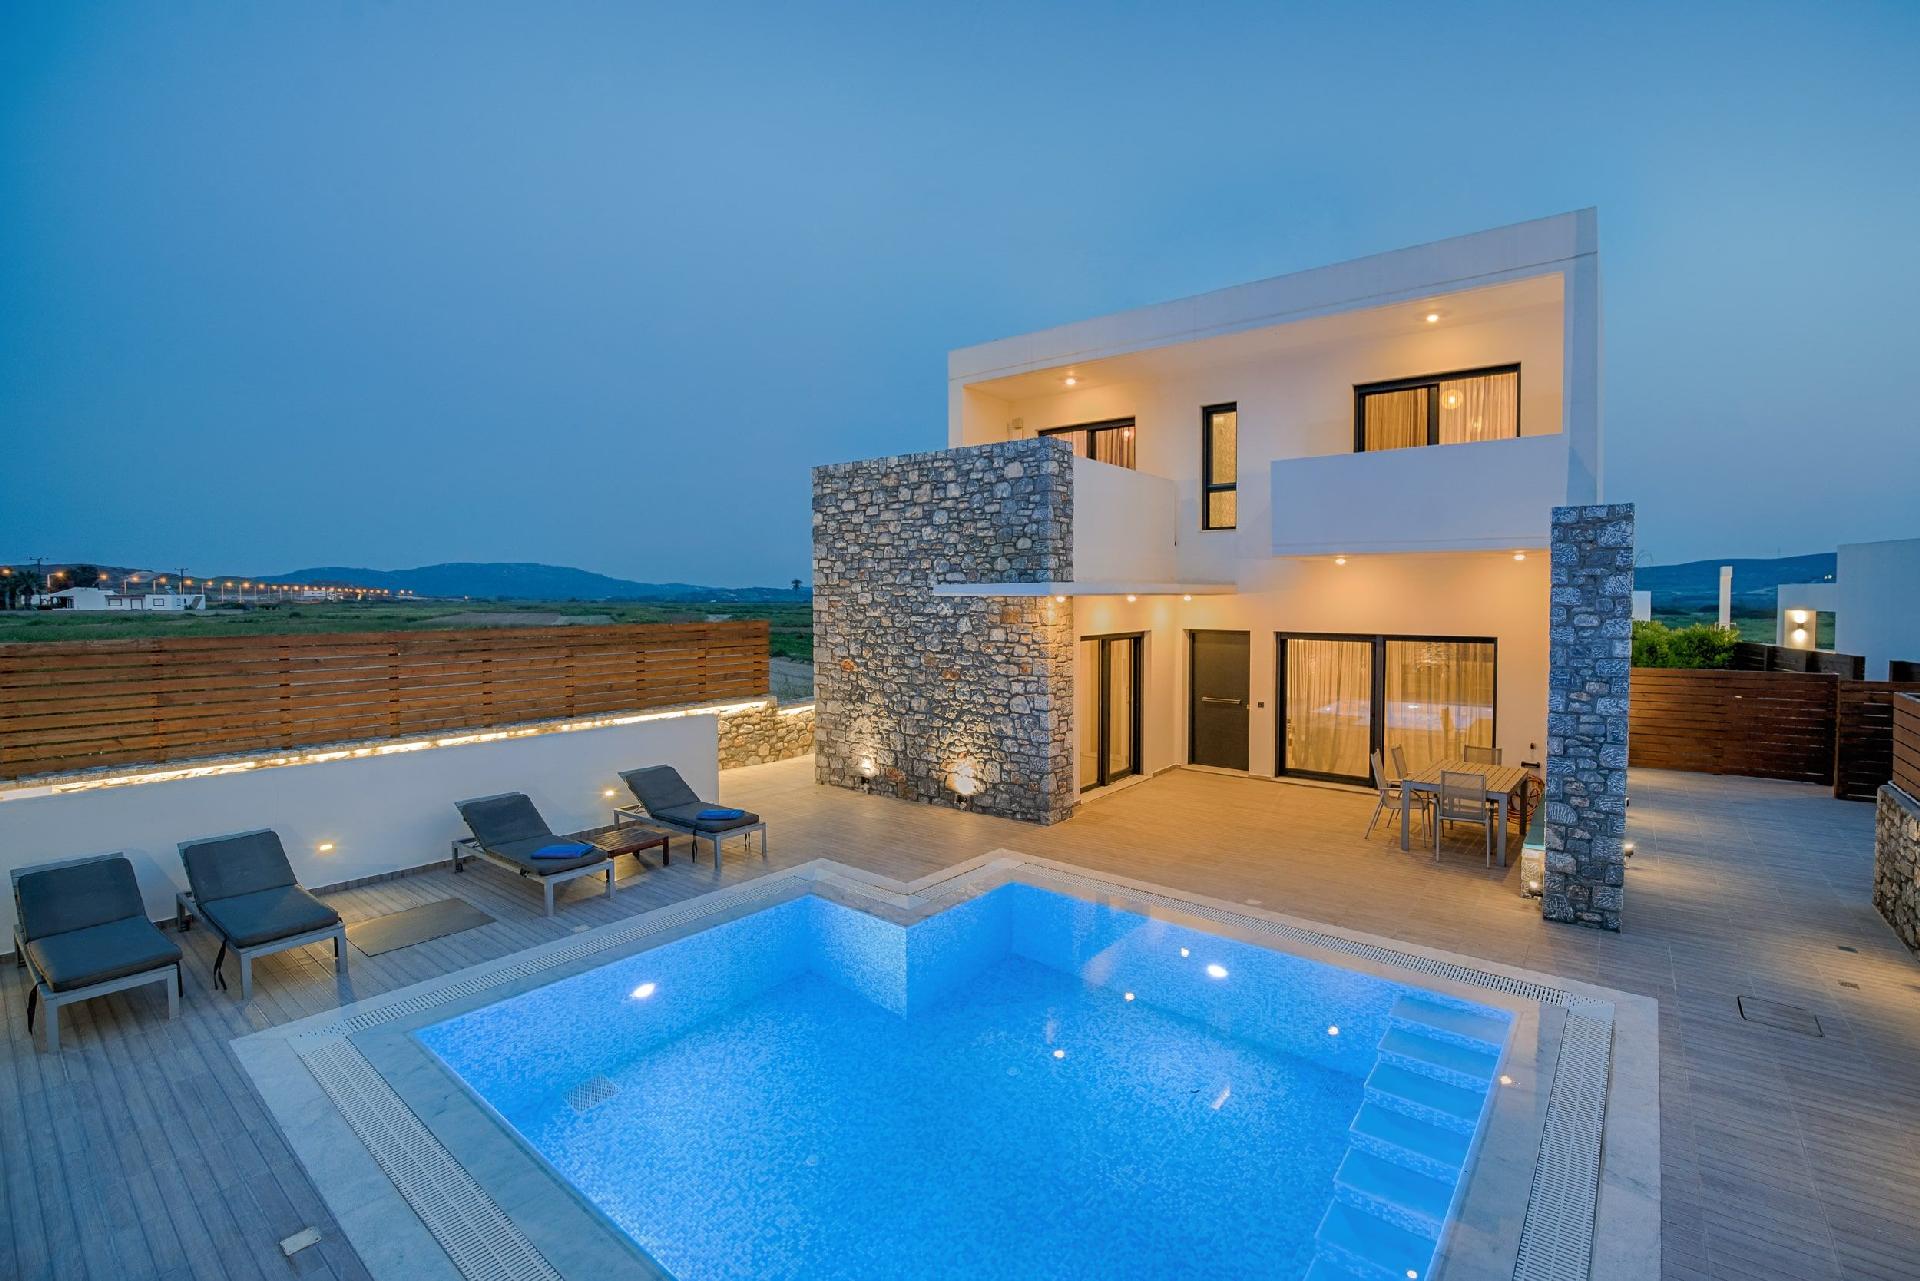 Ferienvilla für sieben Personen Ferienhaus in Griechenland